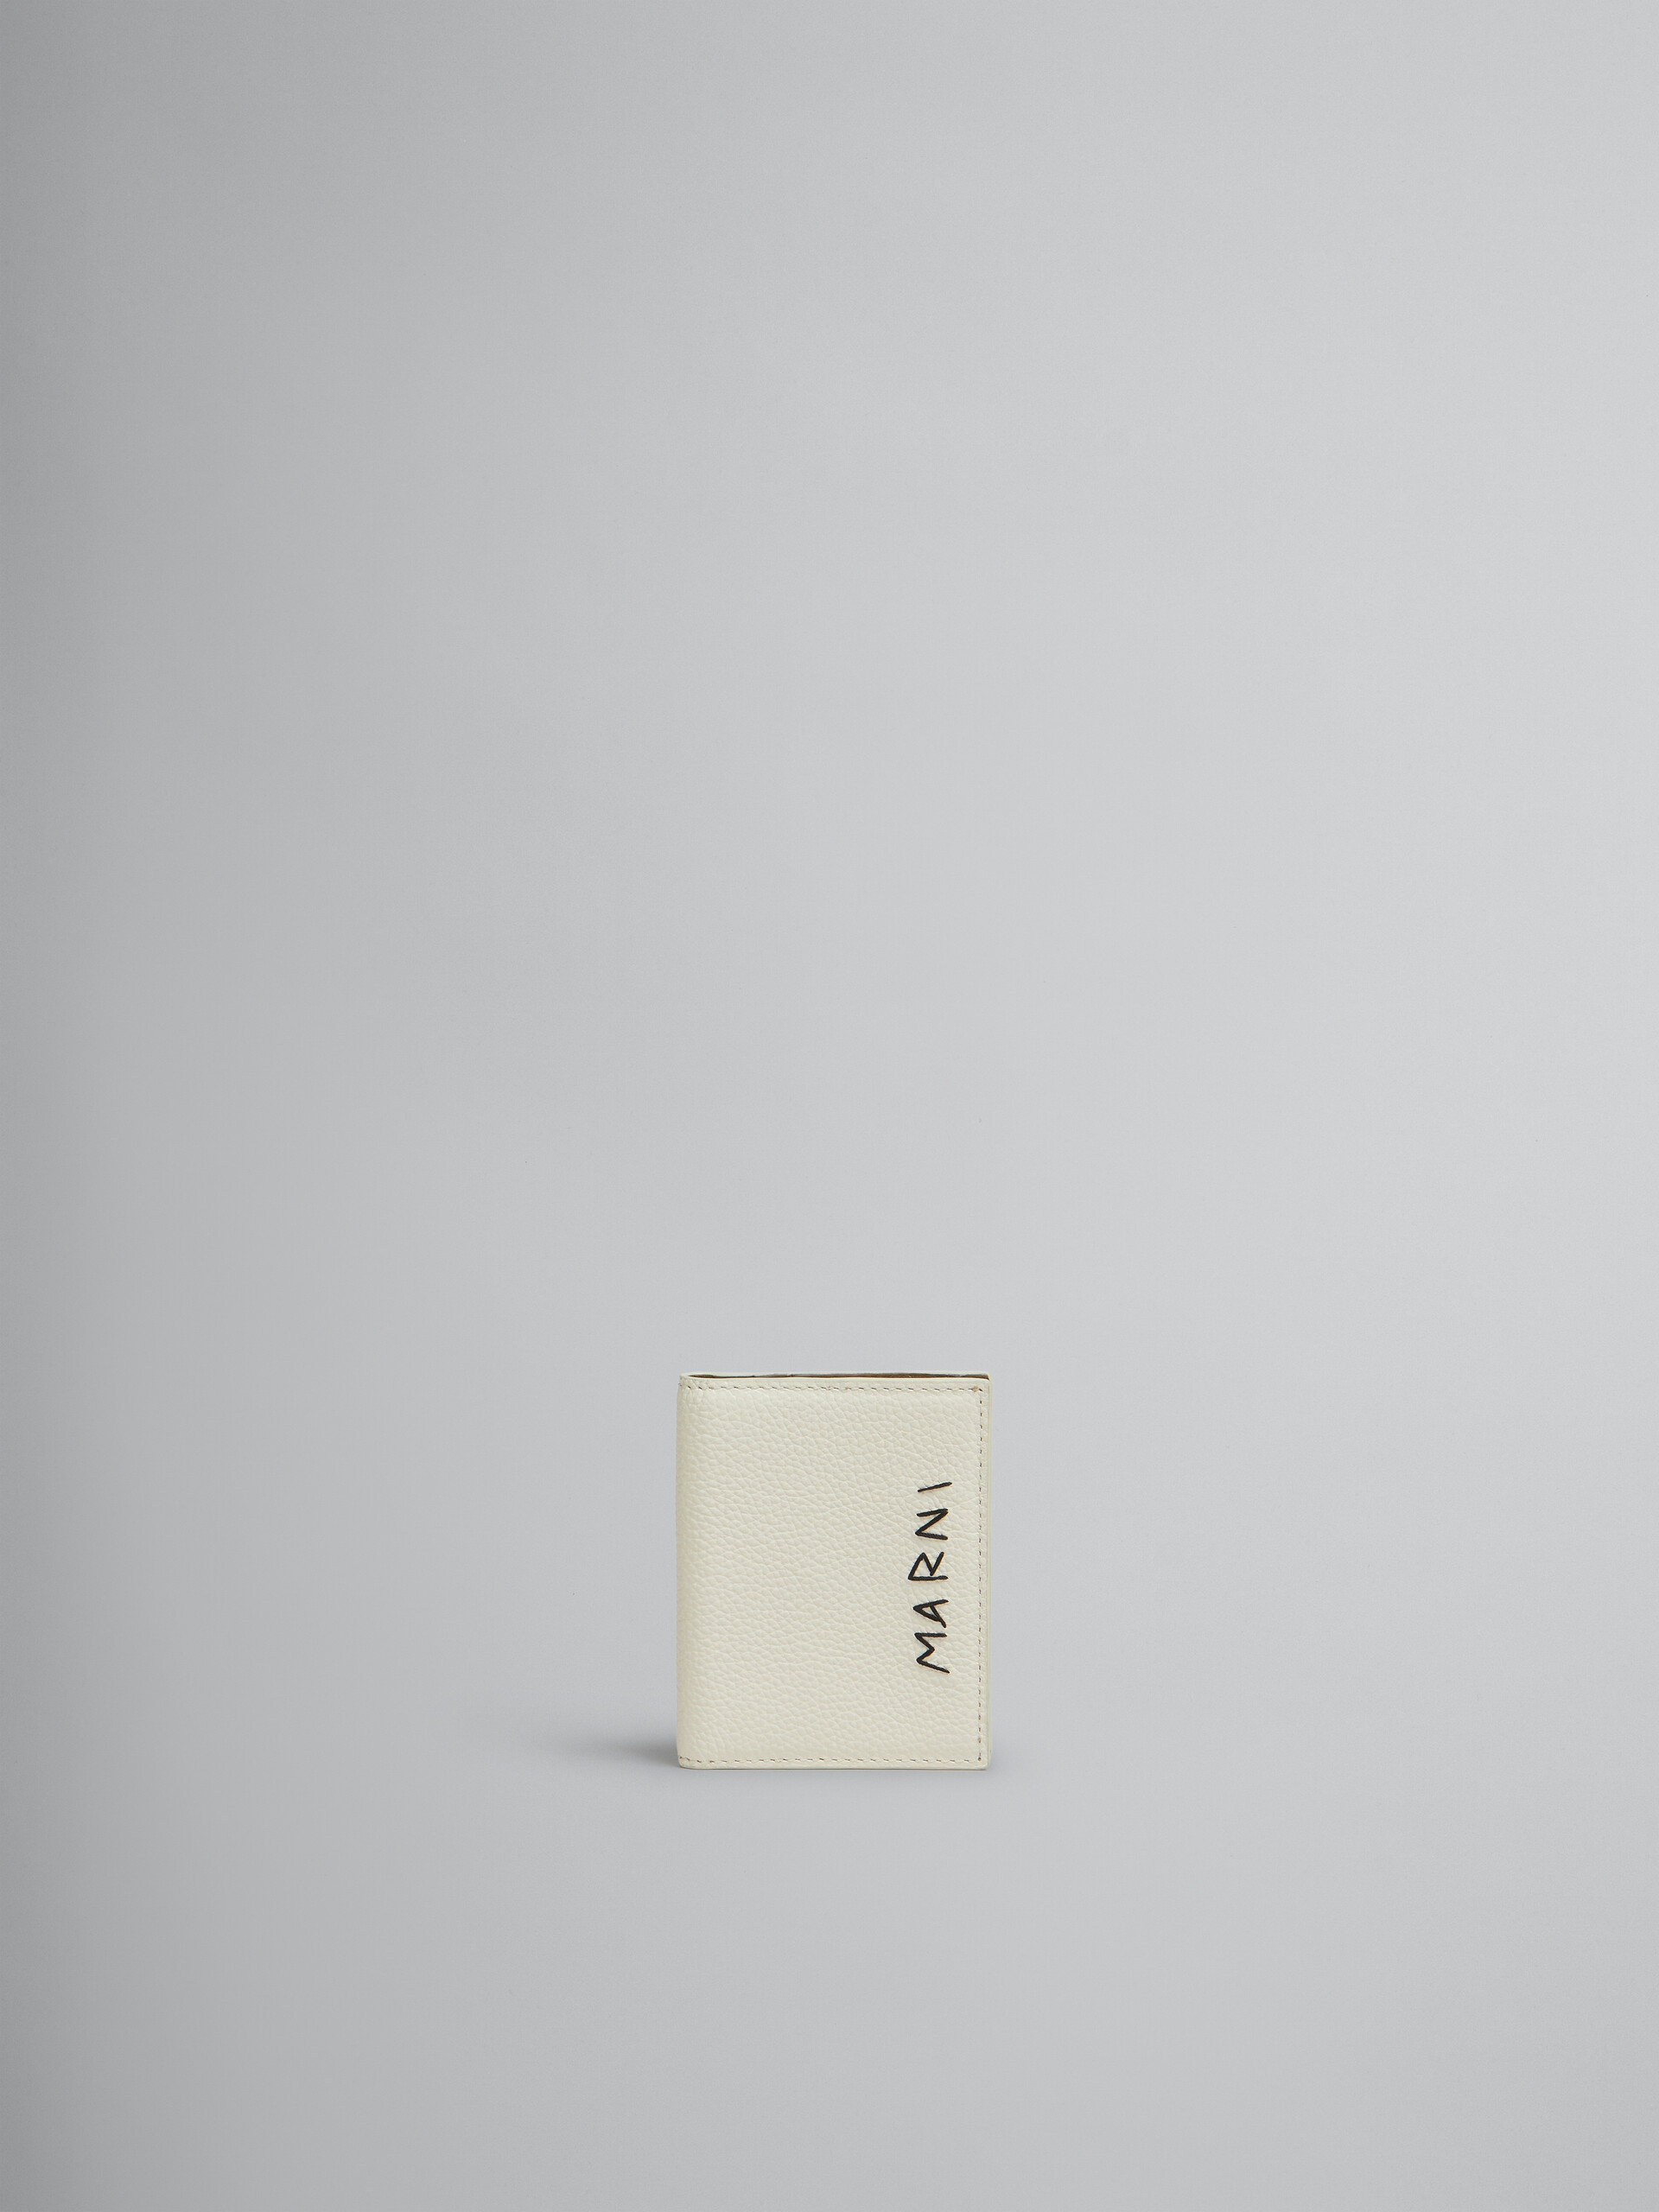 ブラック レザー製キーホルダー、マルニメンディング - 財布 - Image 1